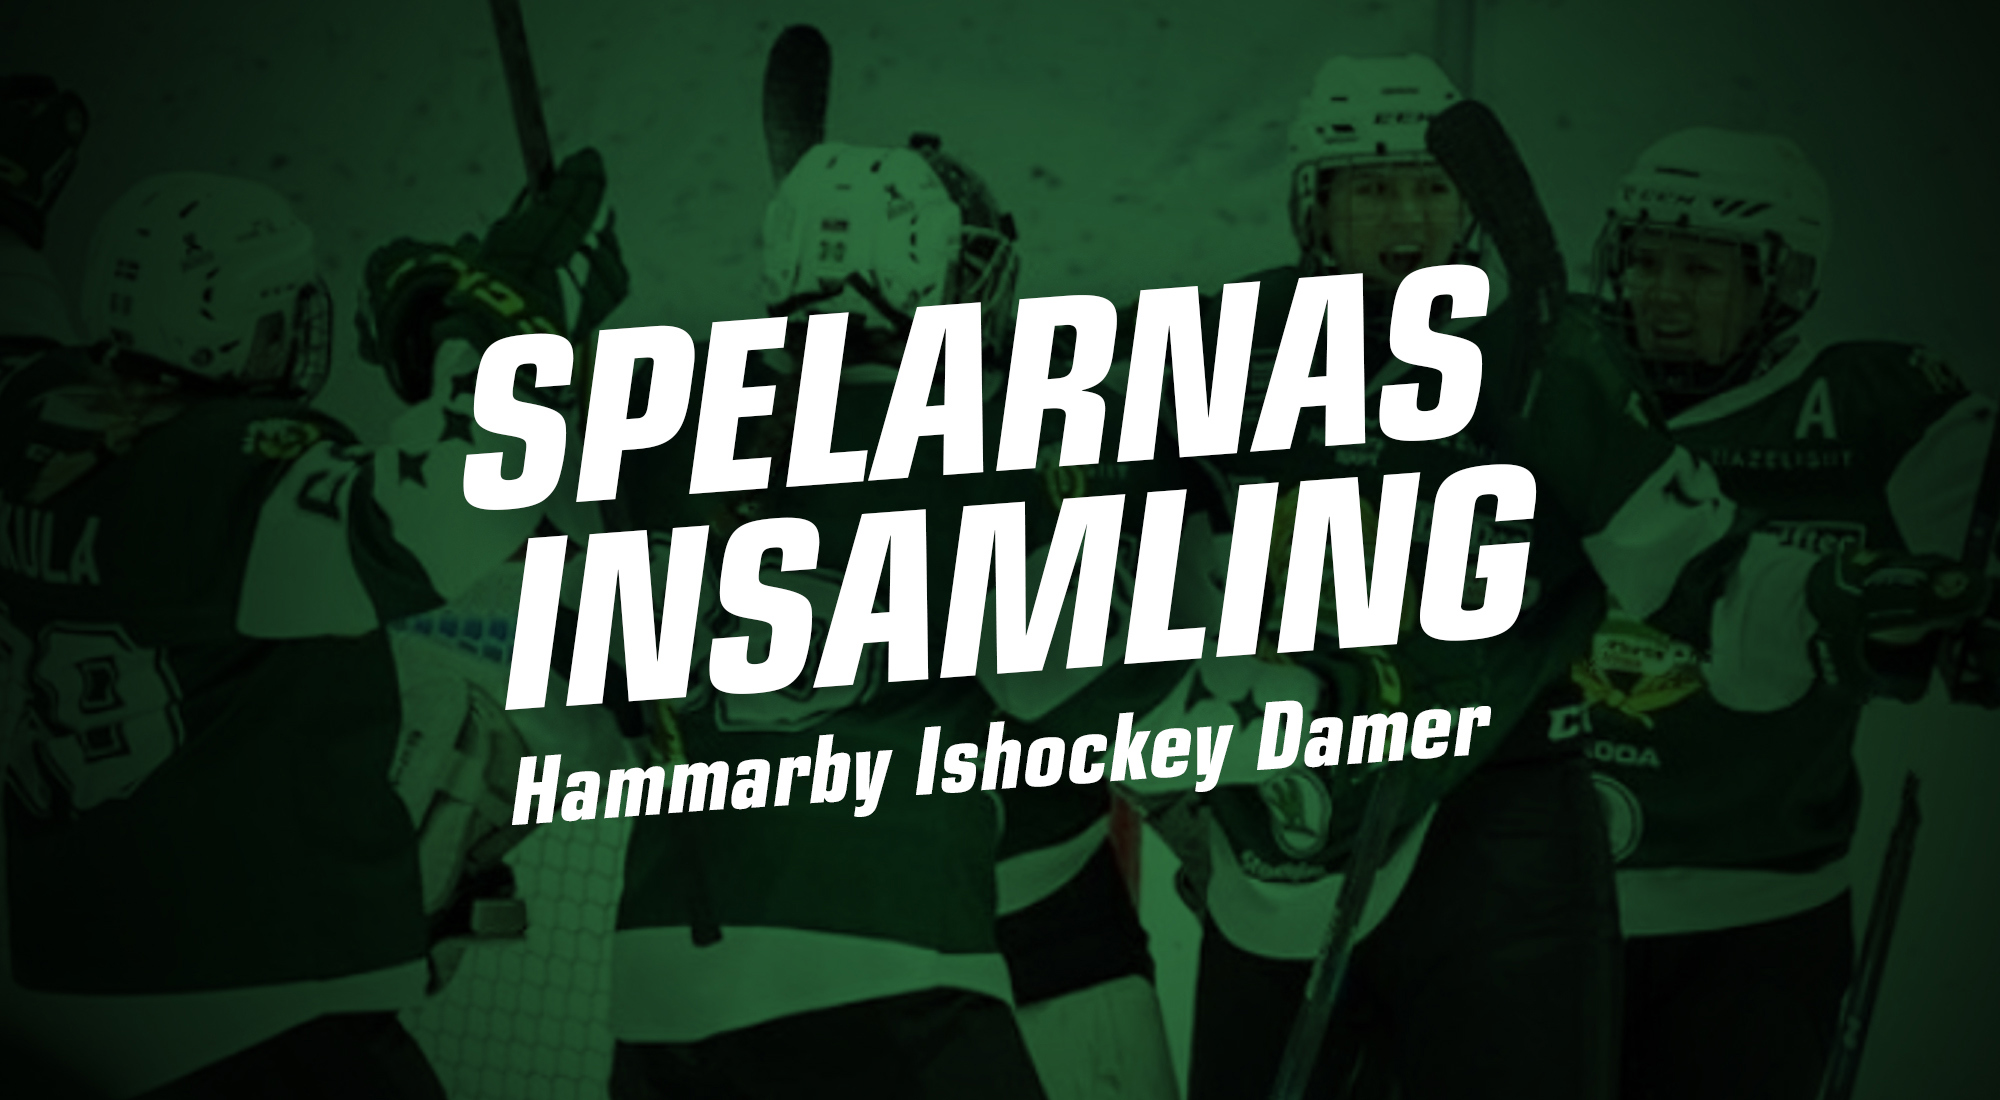 hammarby-hockey-damer-spelarnas-insamling-huvudmotiv.jpg